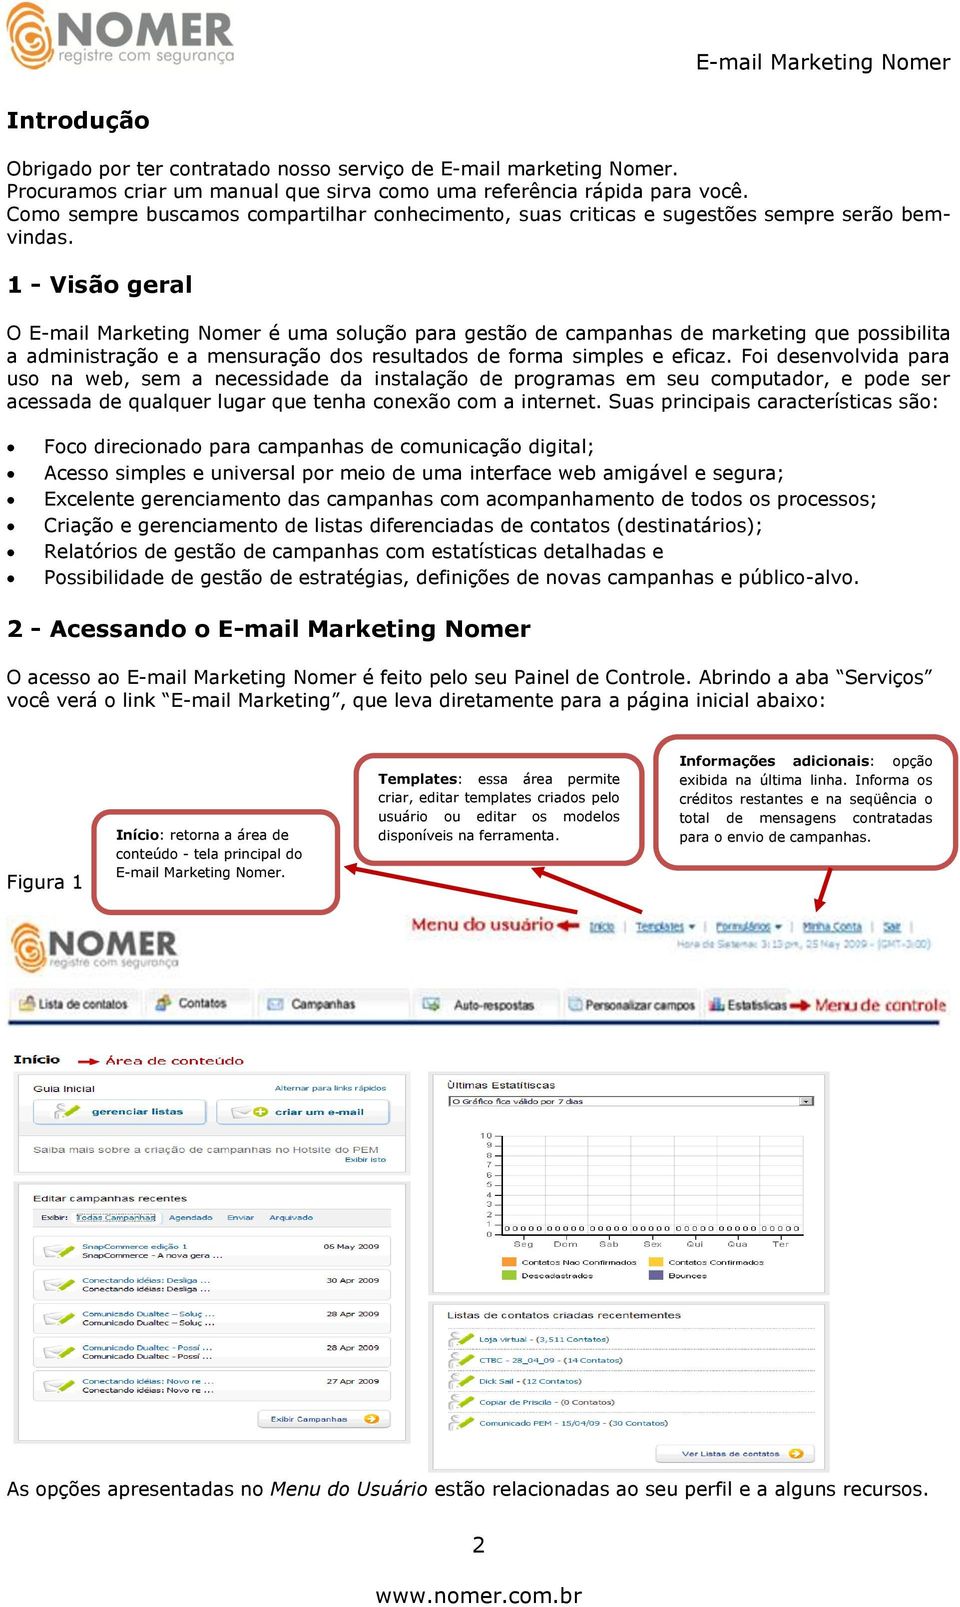 1 - Visão geral O E-mail Marketing Nomer é uma solução para gestão de campanhas de marketing que possibilita a administração e a mensuração dos resultados de forma simples e eficaz.